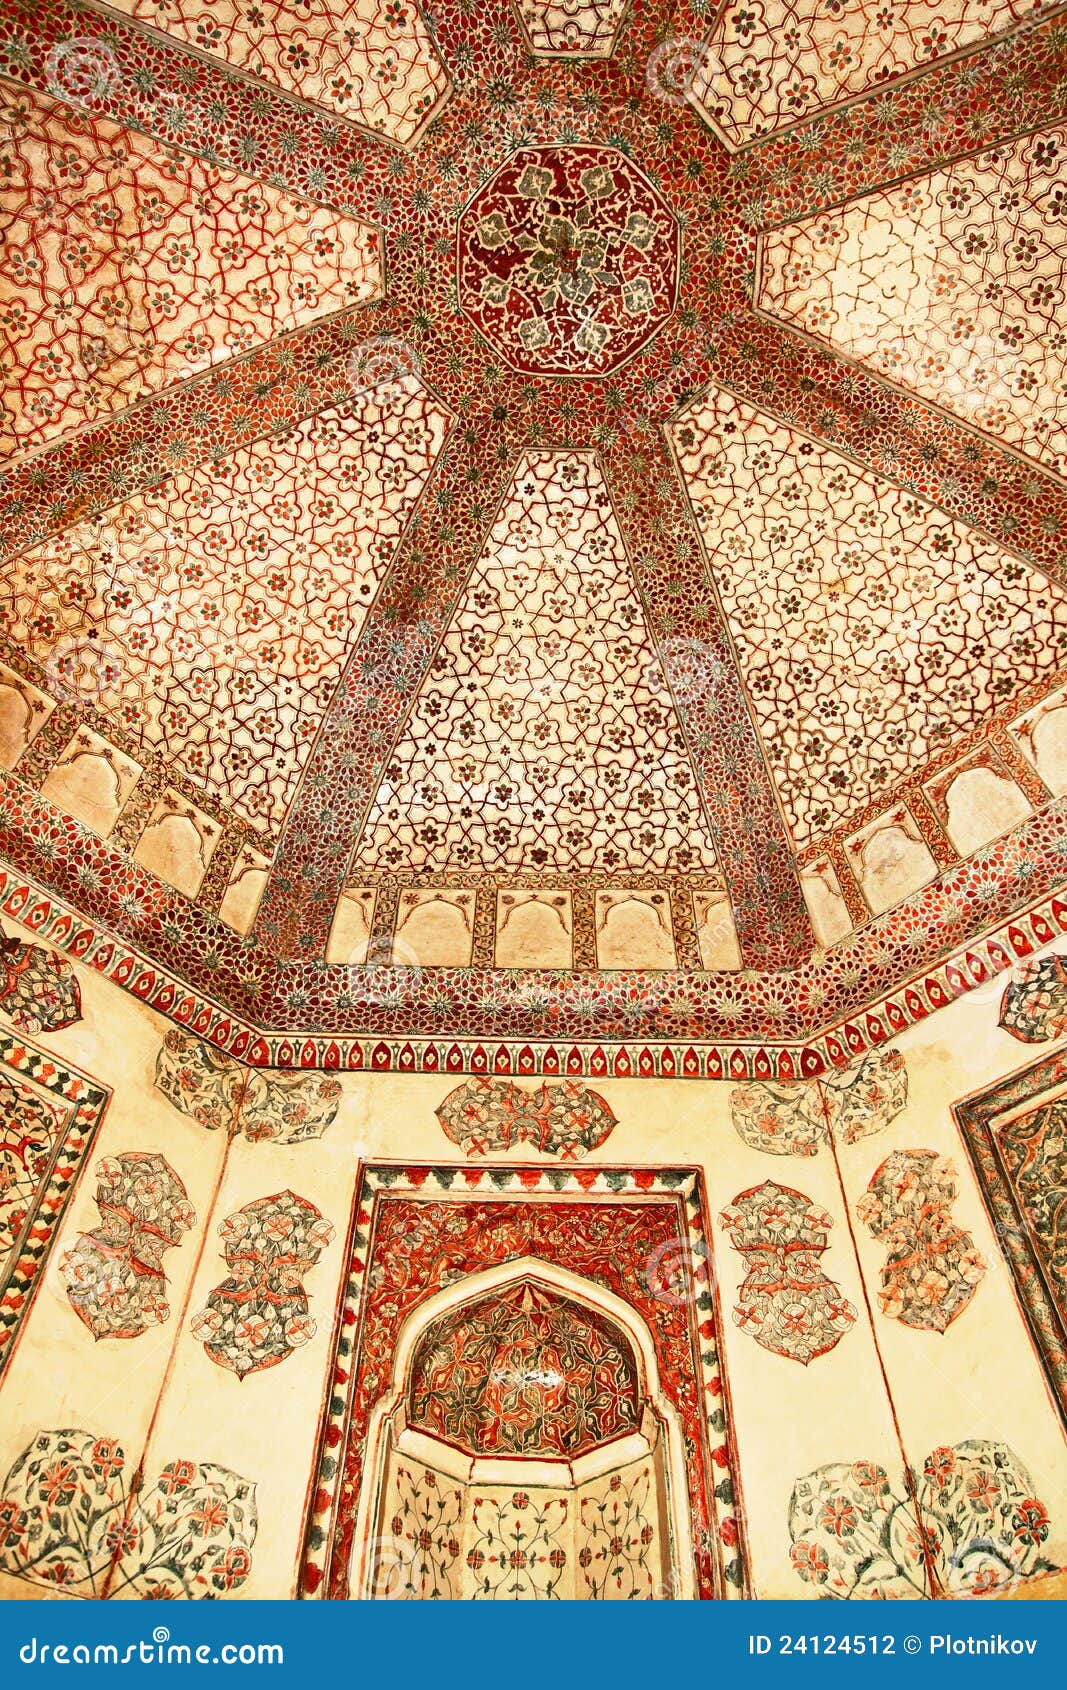 decoration of the jama masjid. fatehpur sikri